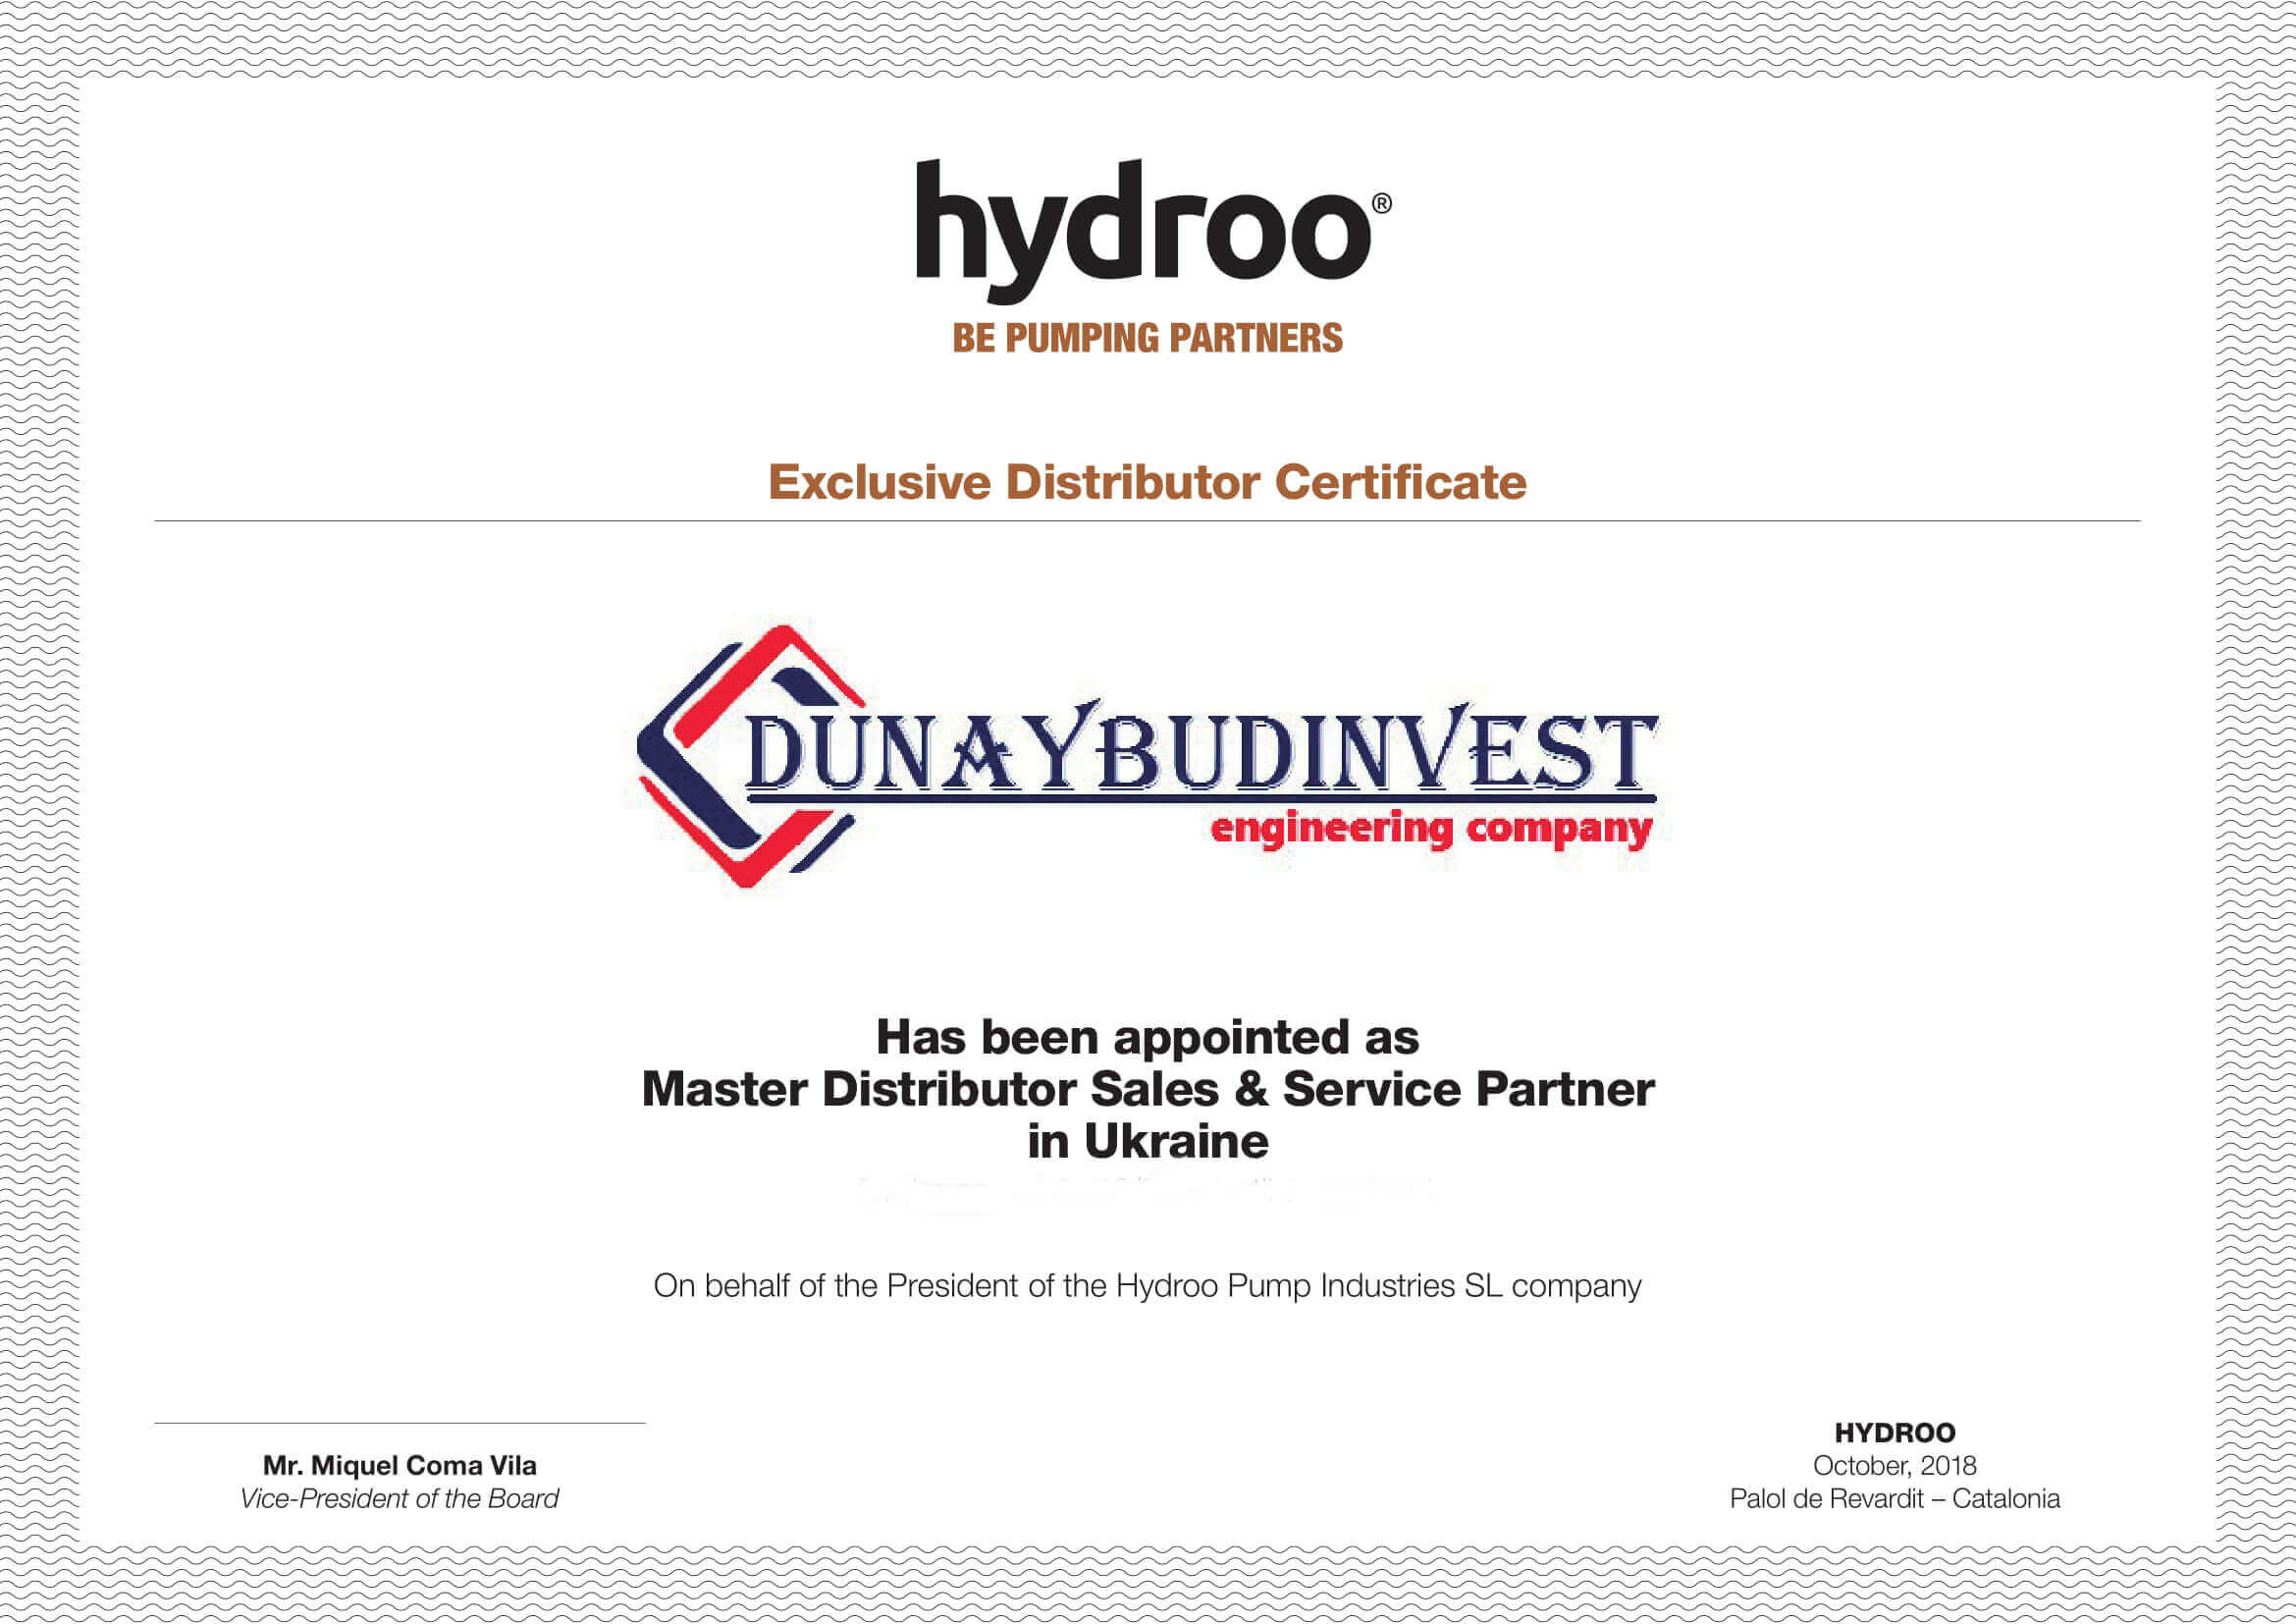 сертифікат hydroo дунайбудінвест